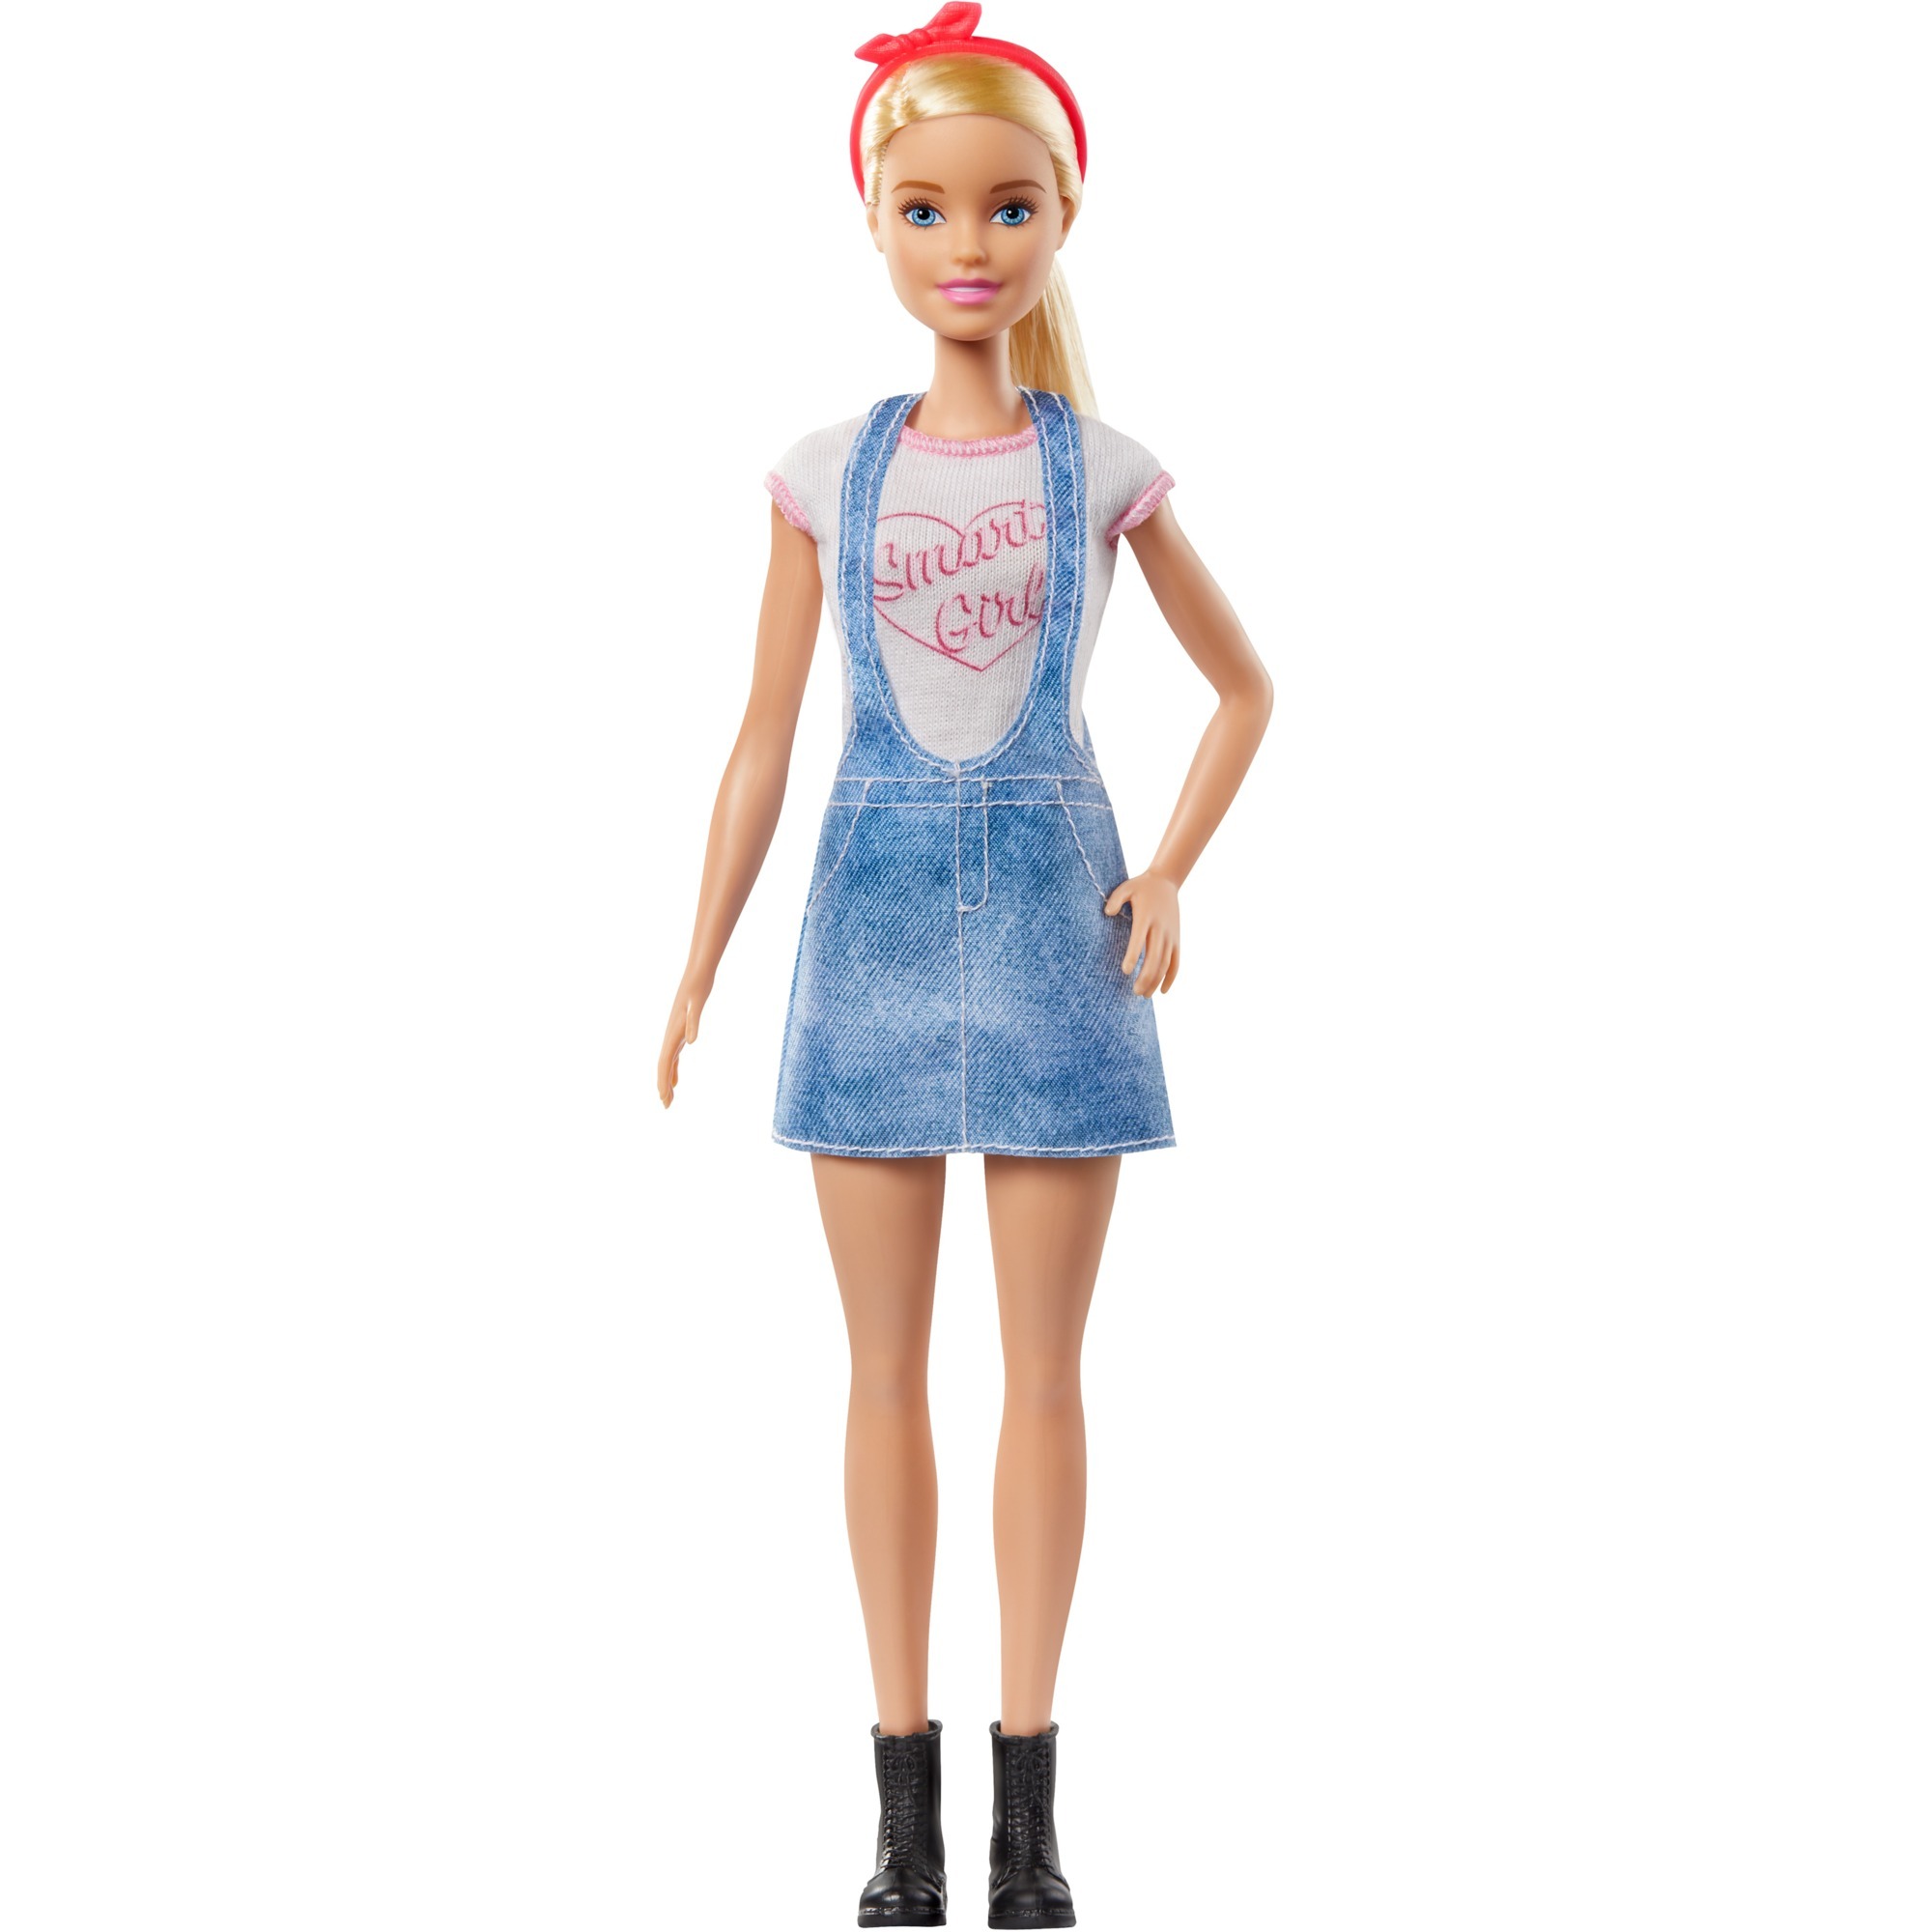 Image of Alternate - Barbie Karriere Puppe (blond) mit Überraschungs-Moden und Accessoires online einkaufen bei Alternate